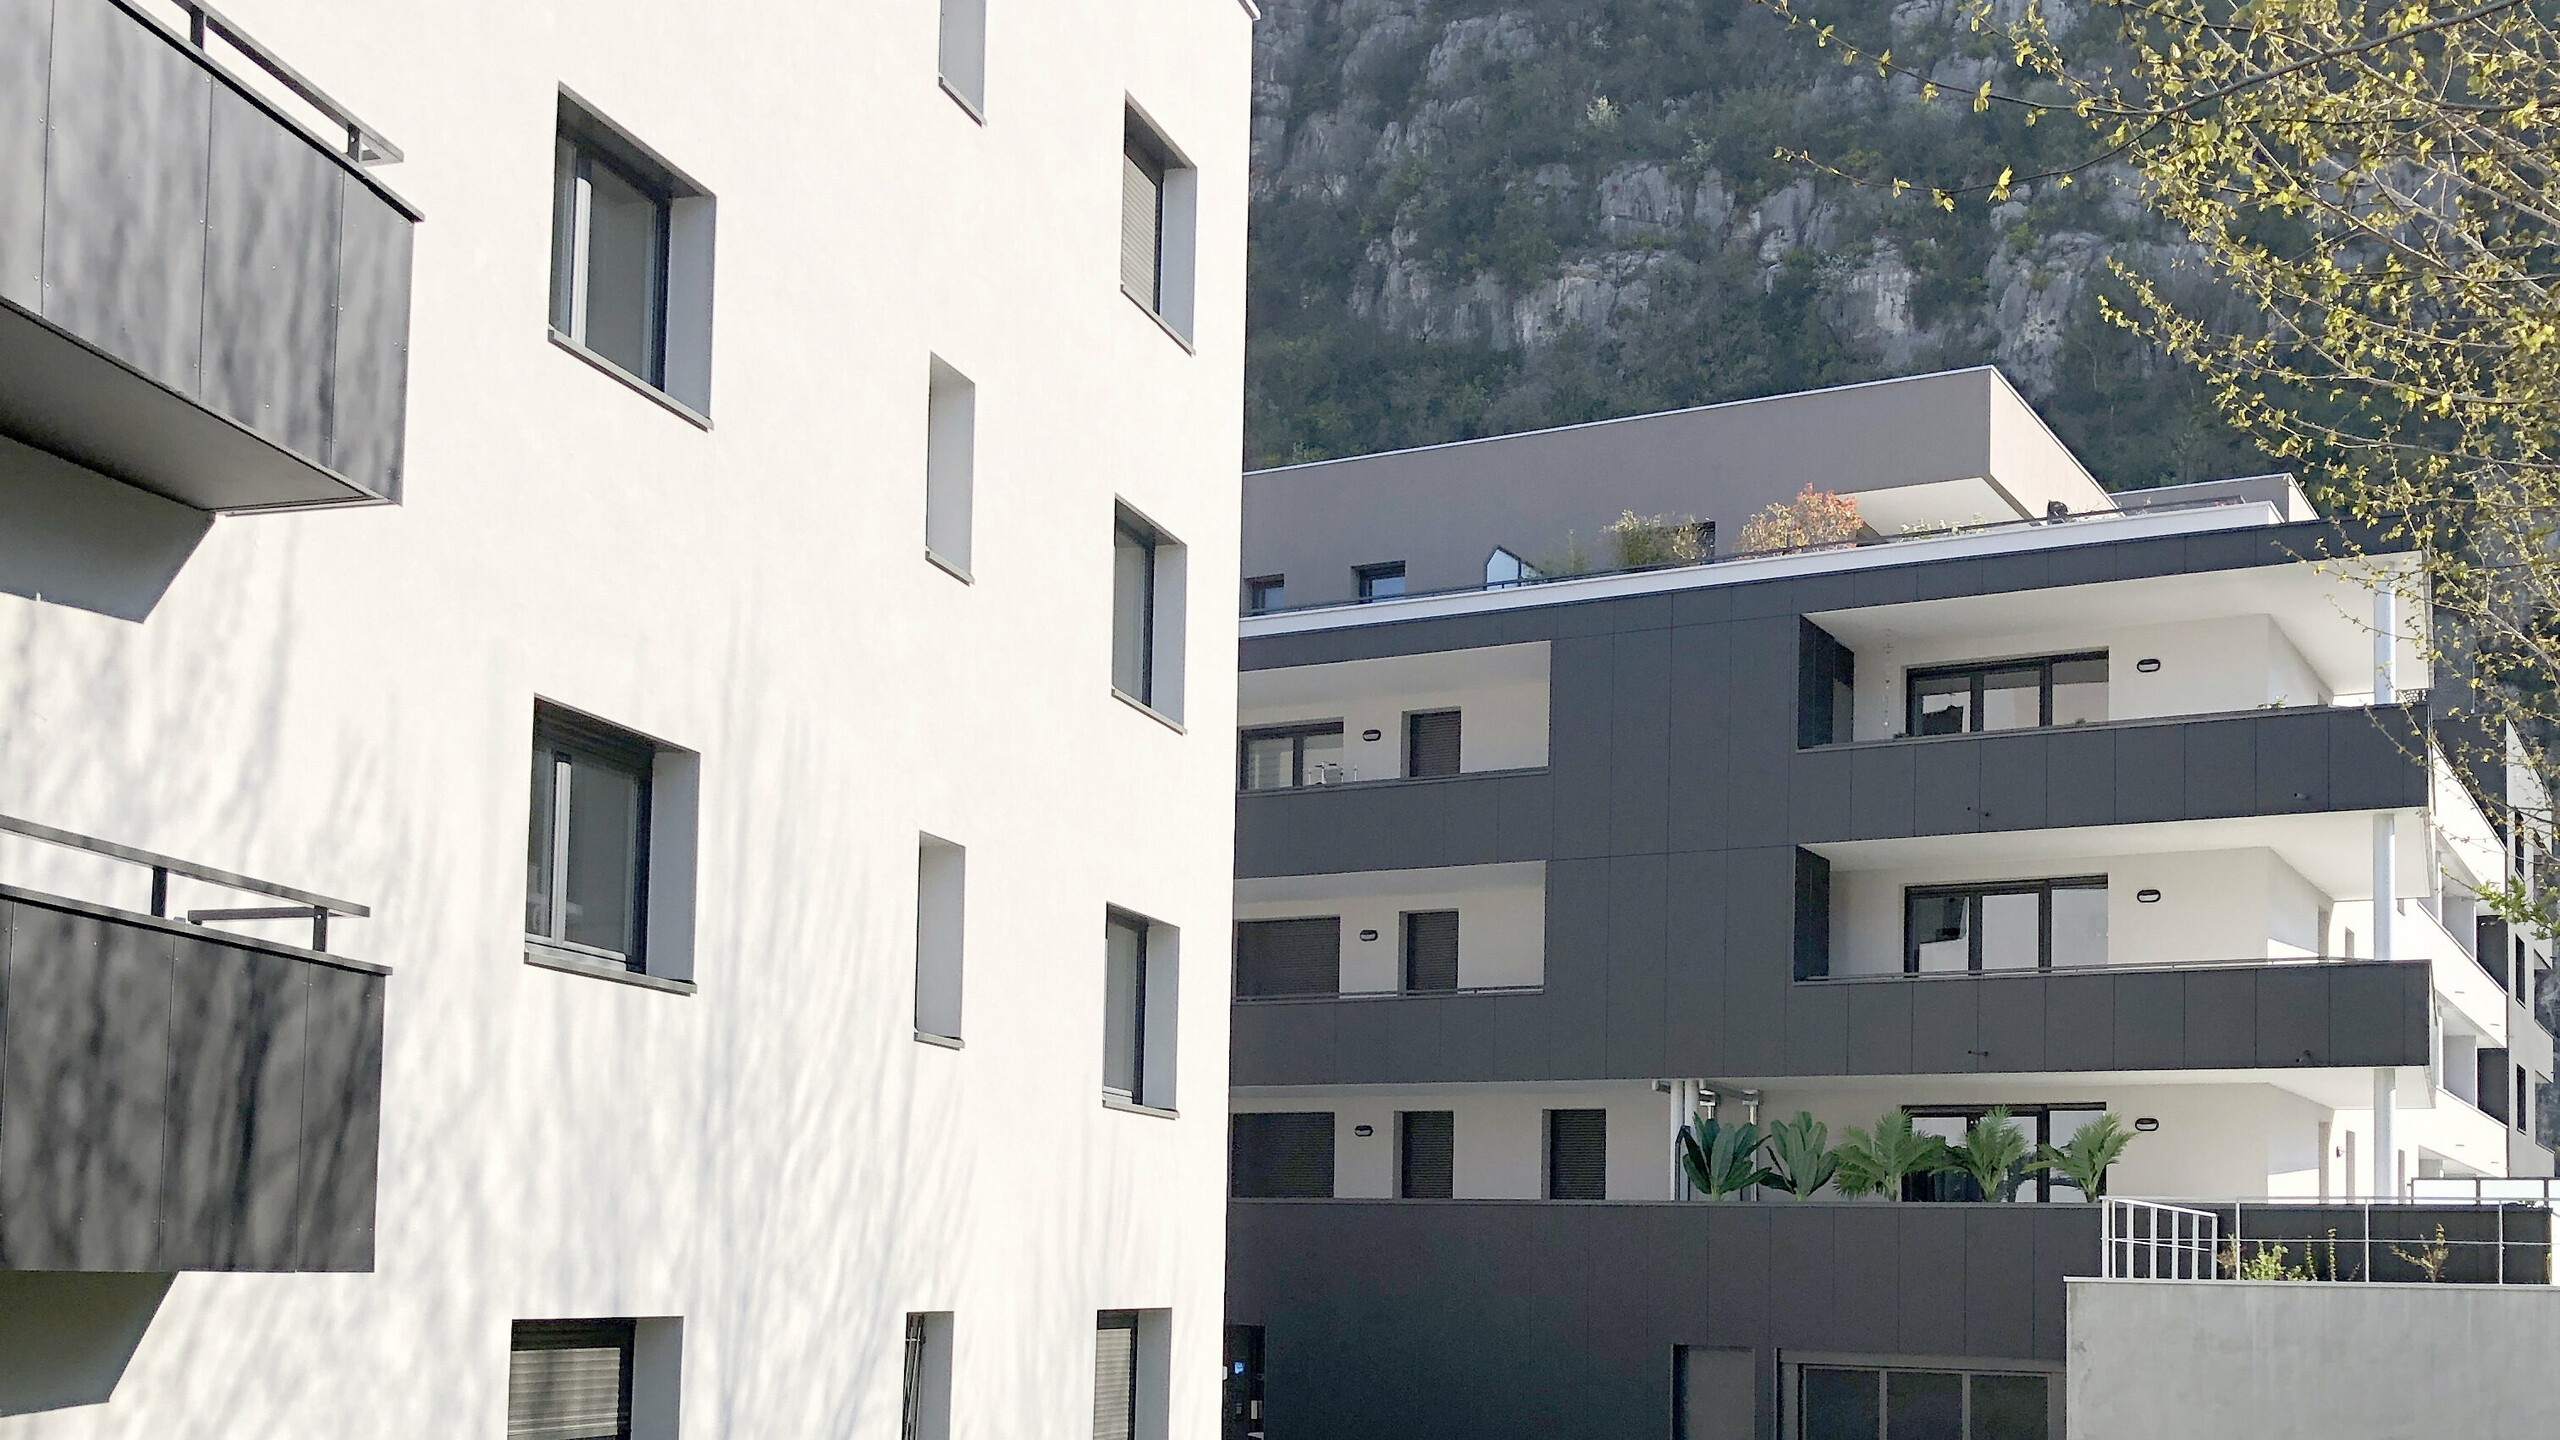 Vue d'ensemble de la résidence Ambre & Onyx recouverte de panneaux composites en aluminium PREFABOND dans la teinte gris noir. Le deuxième bâtiment est en crépis. 